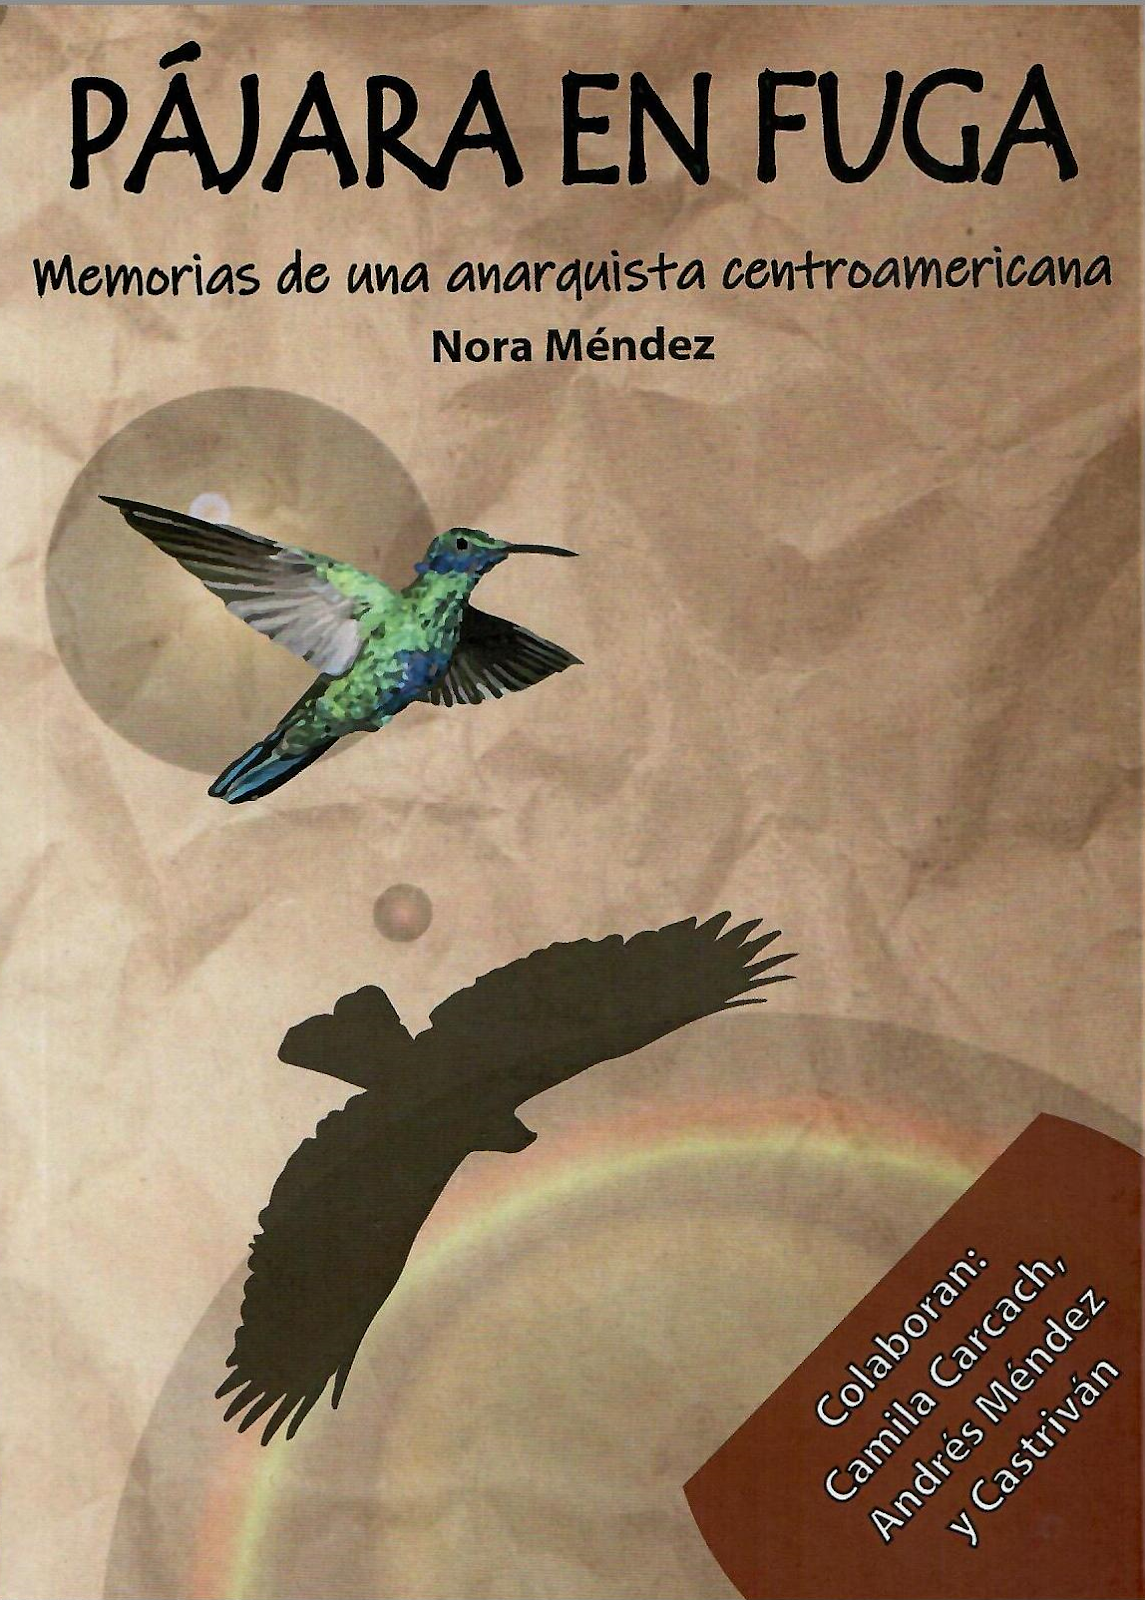 PÁJARA EN FUGA. Memorias de una anarquista centroamericana. Nora Méndez. Nueva publicación.